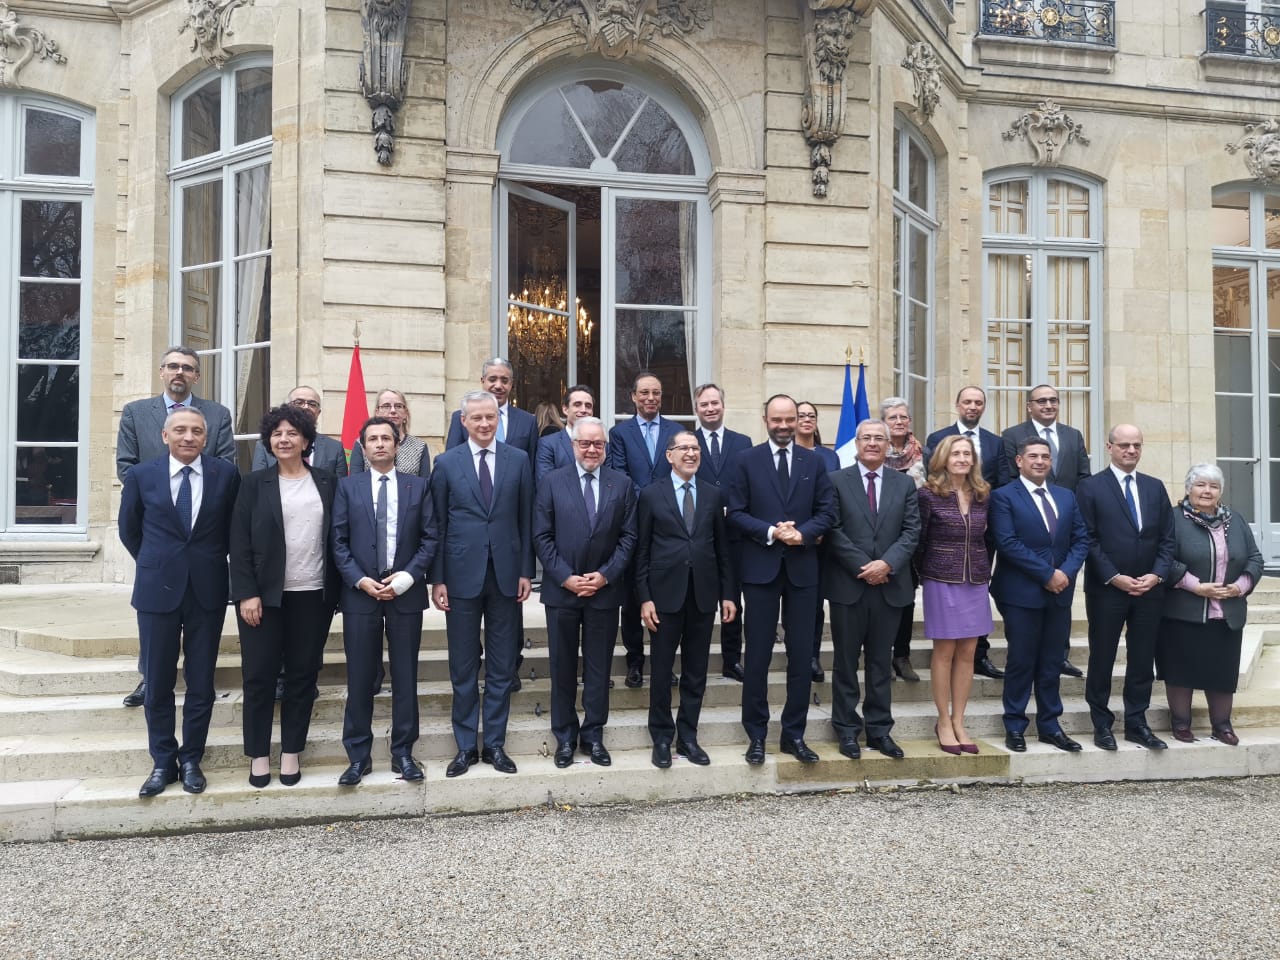 رئيس الحكومة: علاقتنا مع فرنسا يطبعها الصداقة والتعاون والاحترام المتبادل